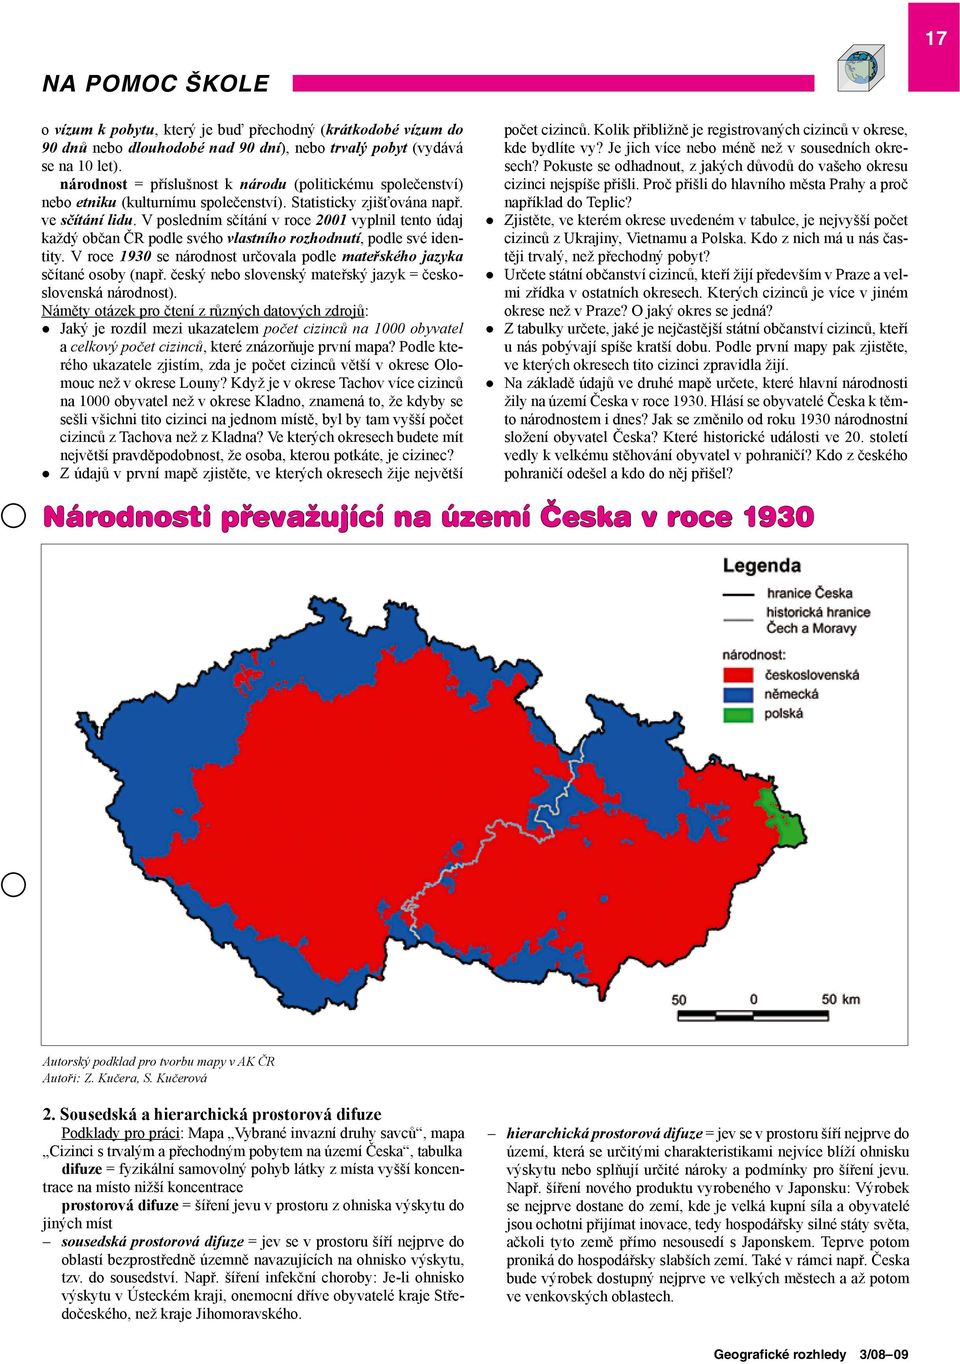 V posledním sčítání v roce 2001 vyplnil tento údaj každý občan ČR podle svého vlastního rozhodnutí, podle své identity. V roce 1930 se národnost určovala podle mateřského jazyka sčítané osoby (např.